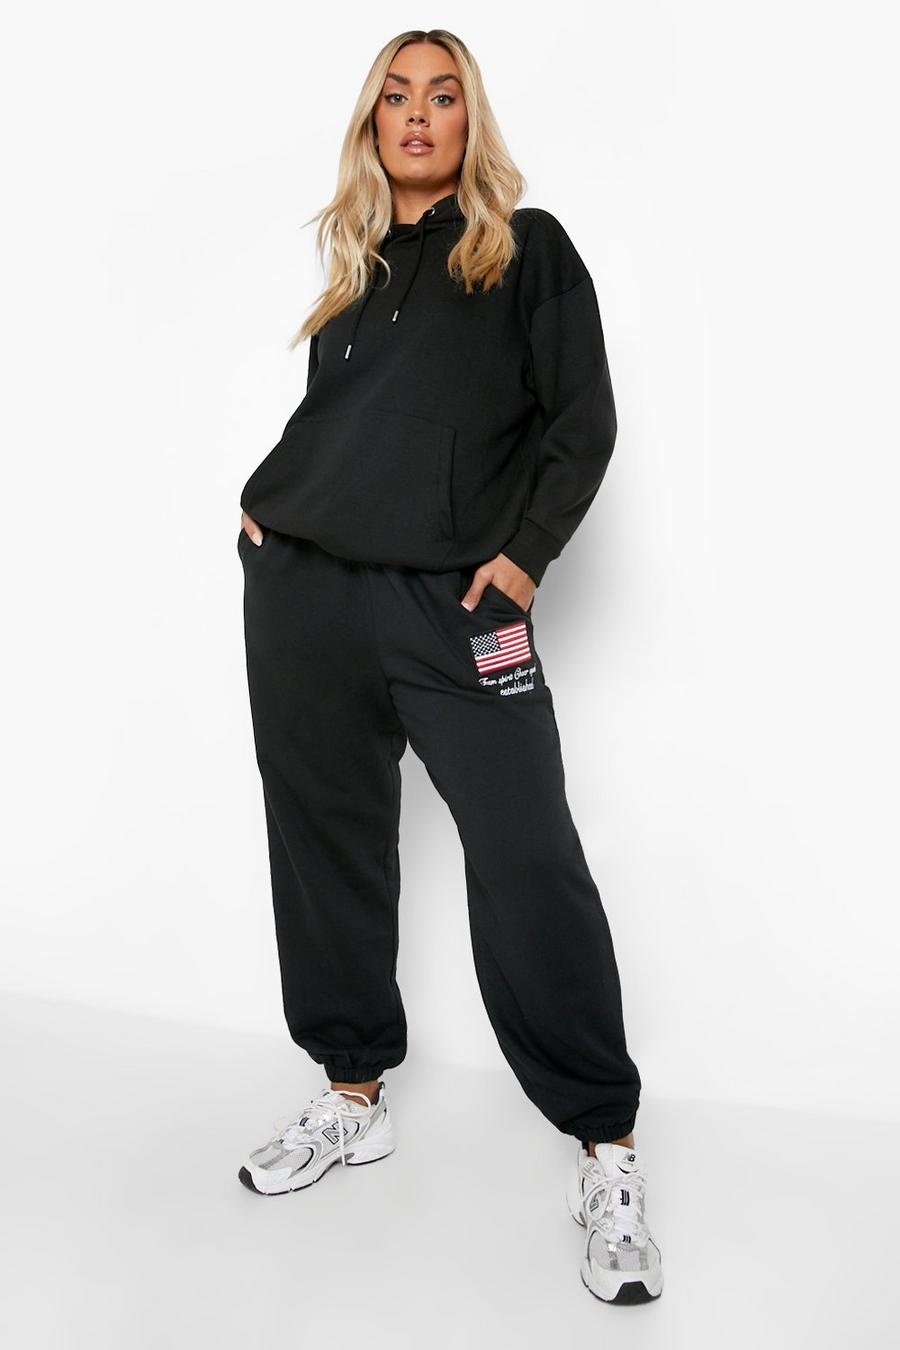 Pantalón deportivo Plus oversize Official con bordado, Black nero